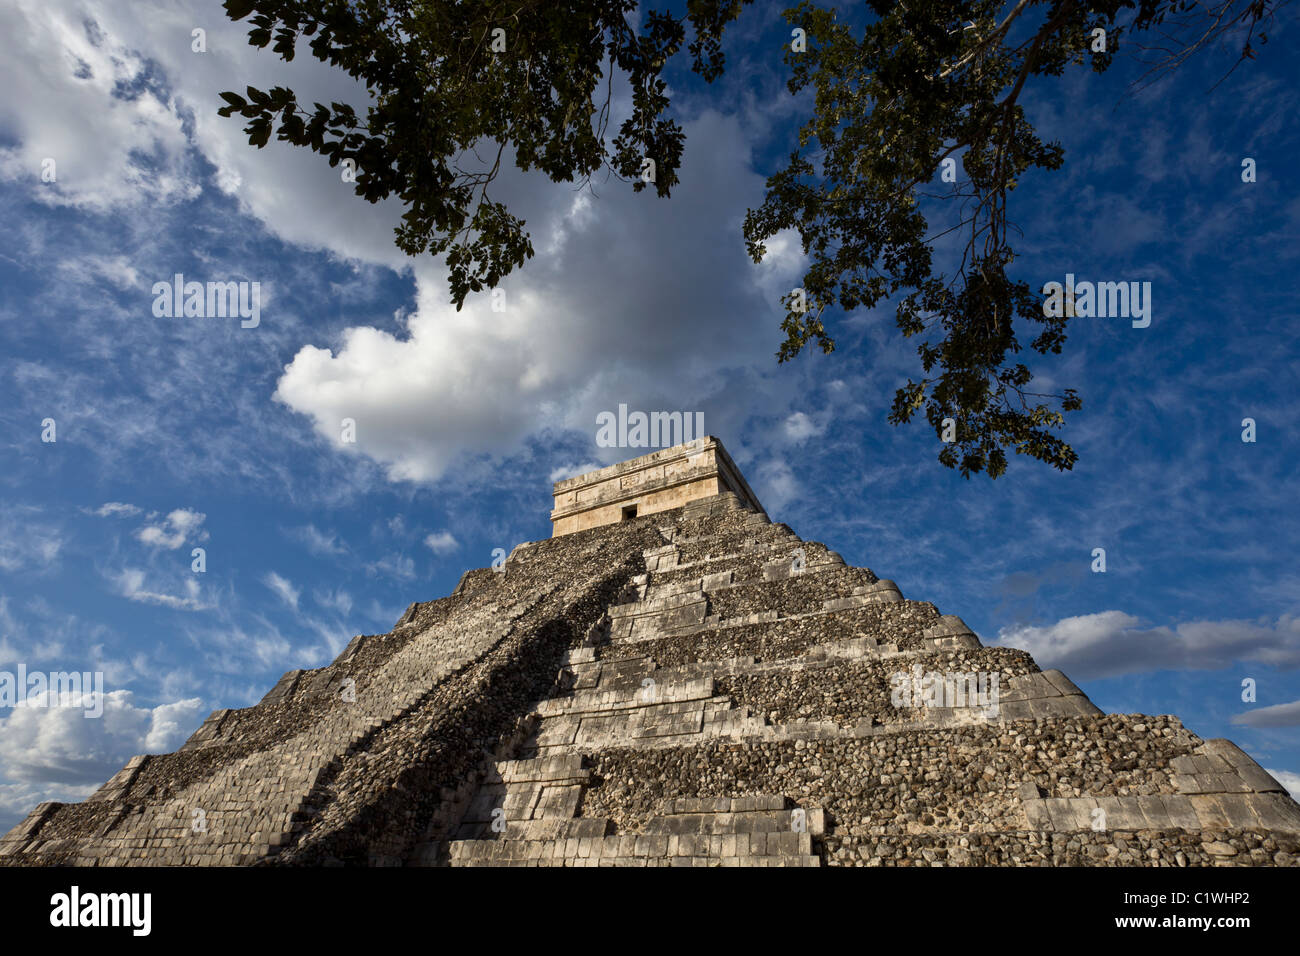 La pirámide de Kukulkán o "El Castillo", una de las nuevas siete maravillas del mundo, Chichen Itza, en la península de Yucatán, Mexco. Foto de stock